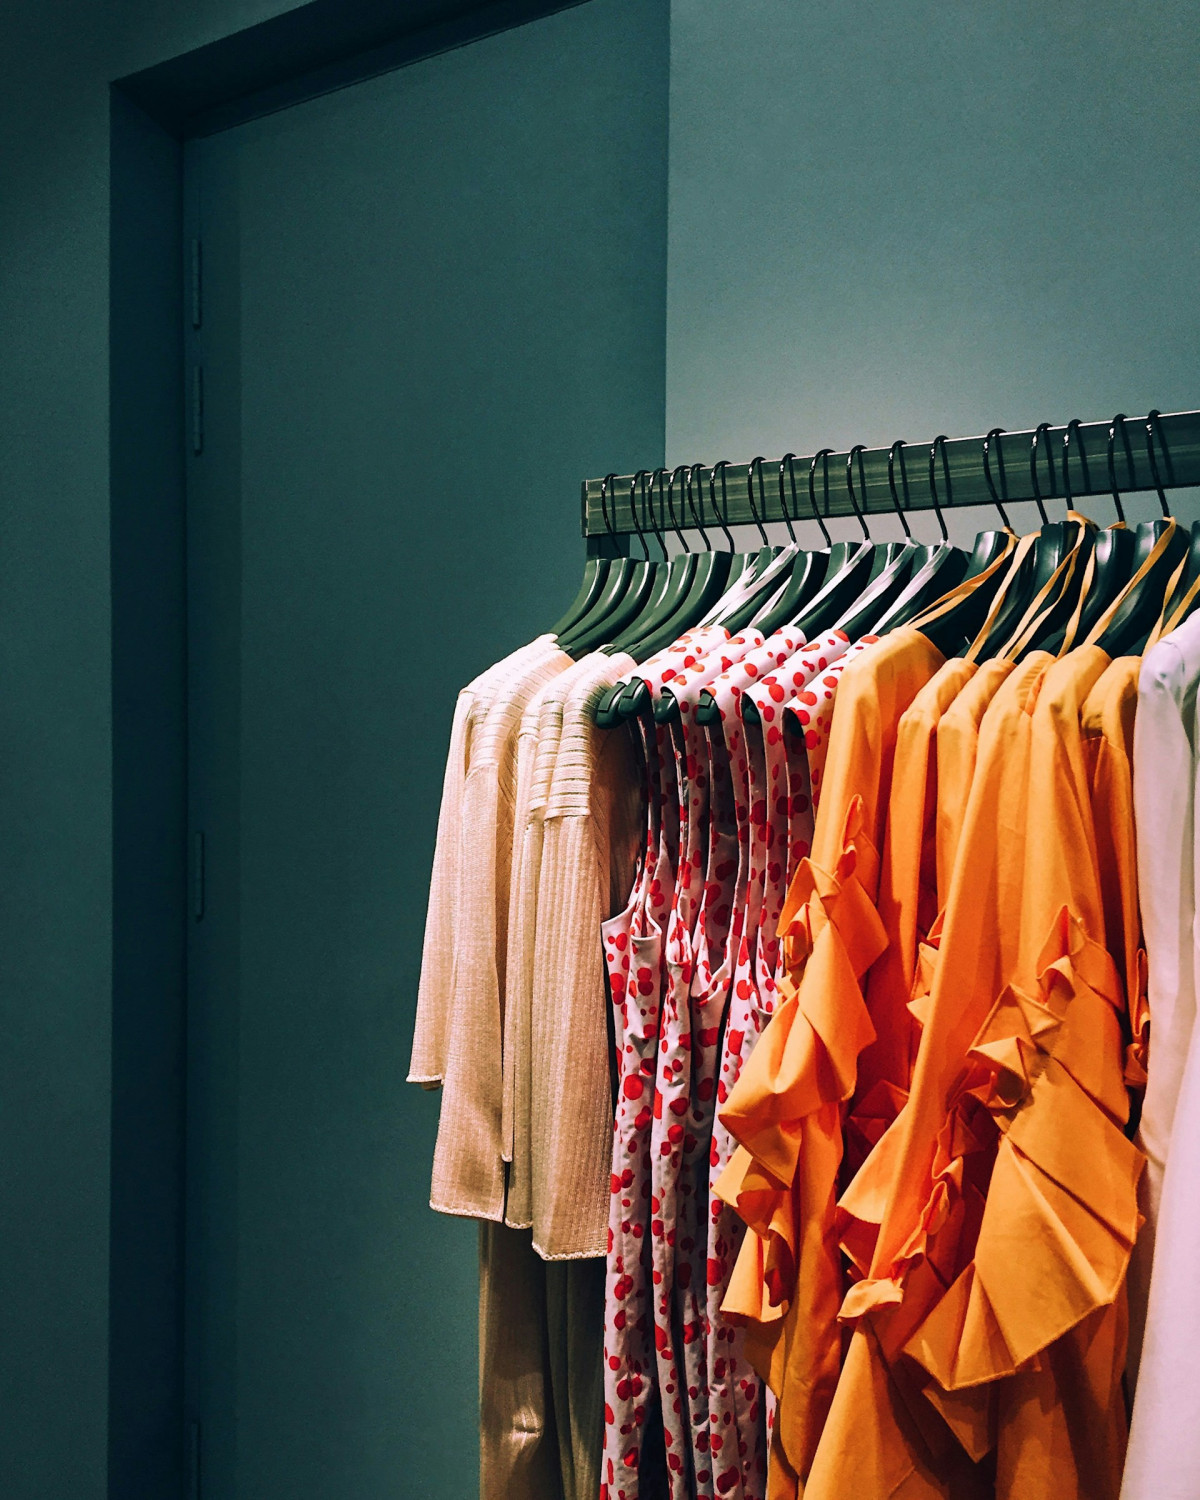 Одежда в магазине, эффект Дидро, теряем интерес к старым вещам после покупки чего-то нового